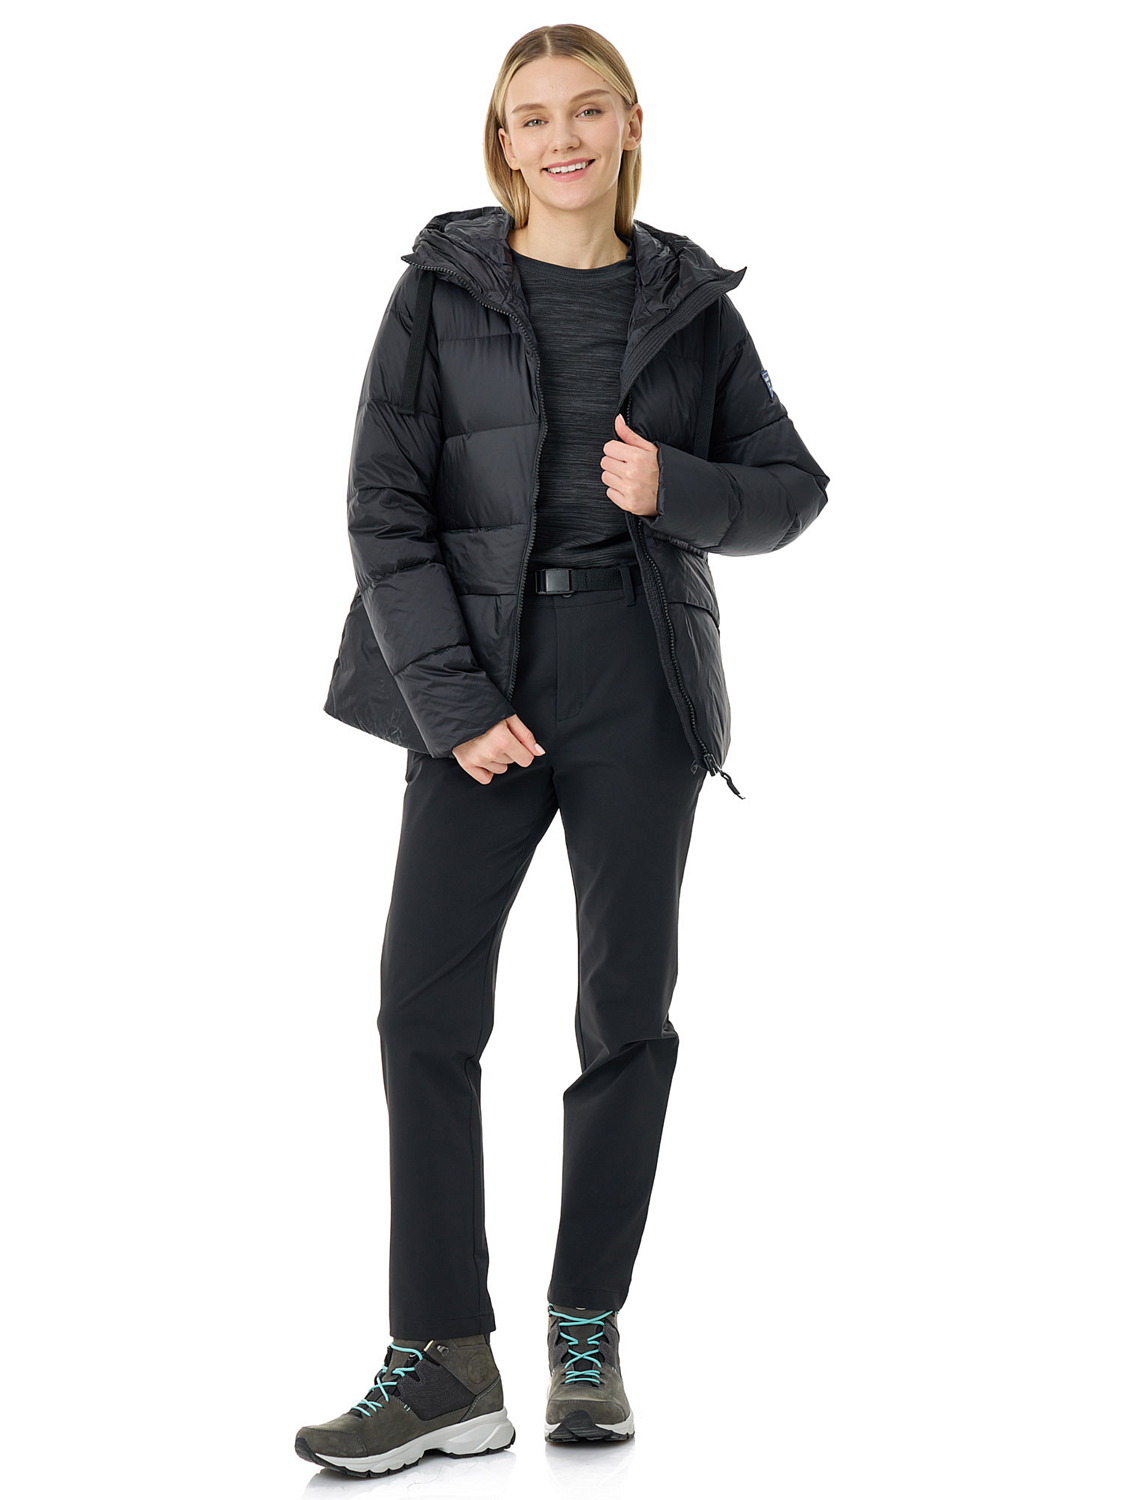 Куртка Dolomite Jacket W's Corvara H Black